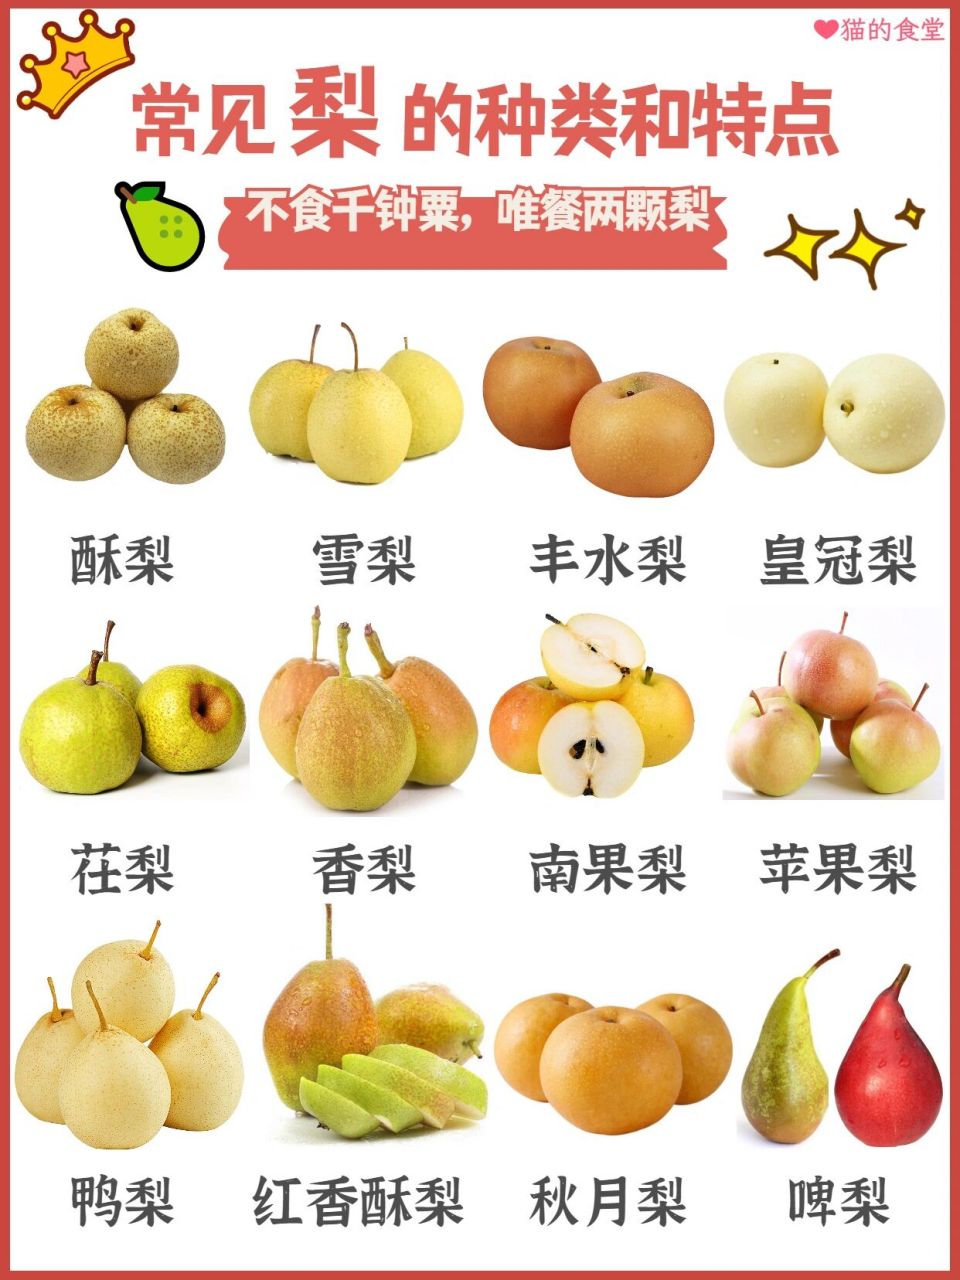 『98科普』常见梨的种类和特点 水水哒~ 梨的品种很多,大体上分为